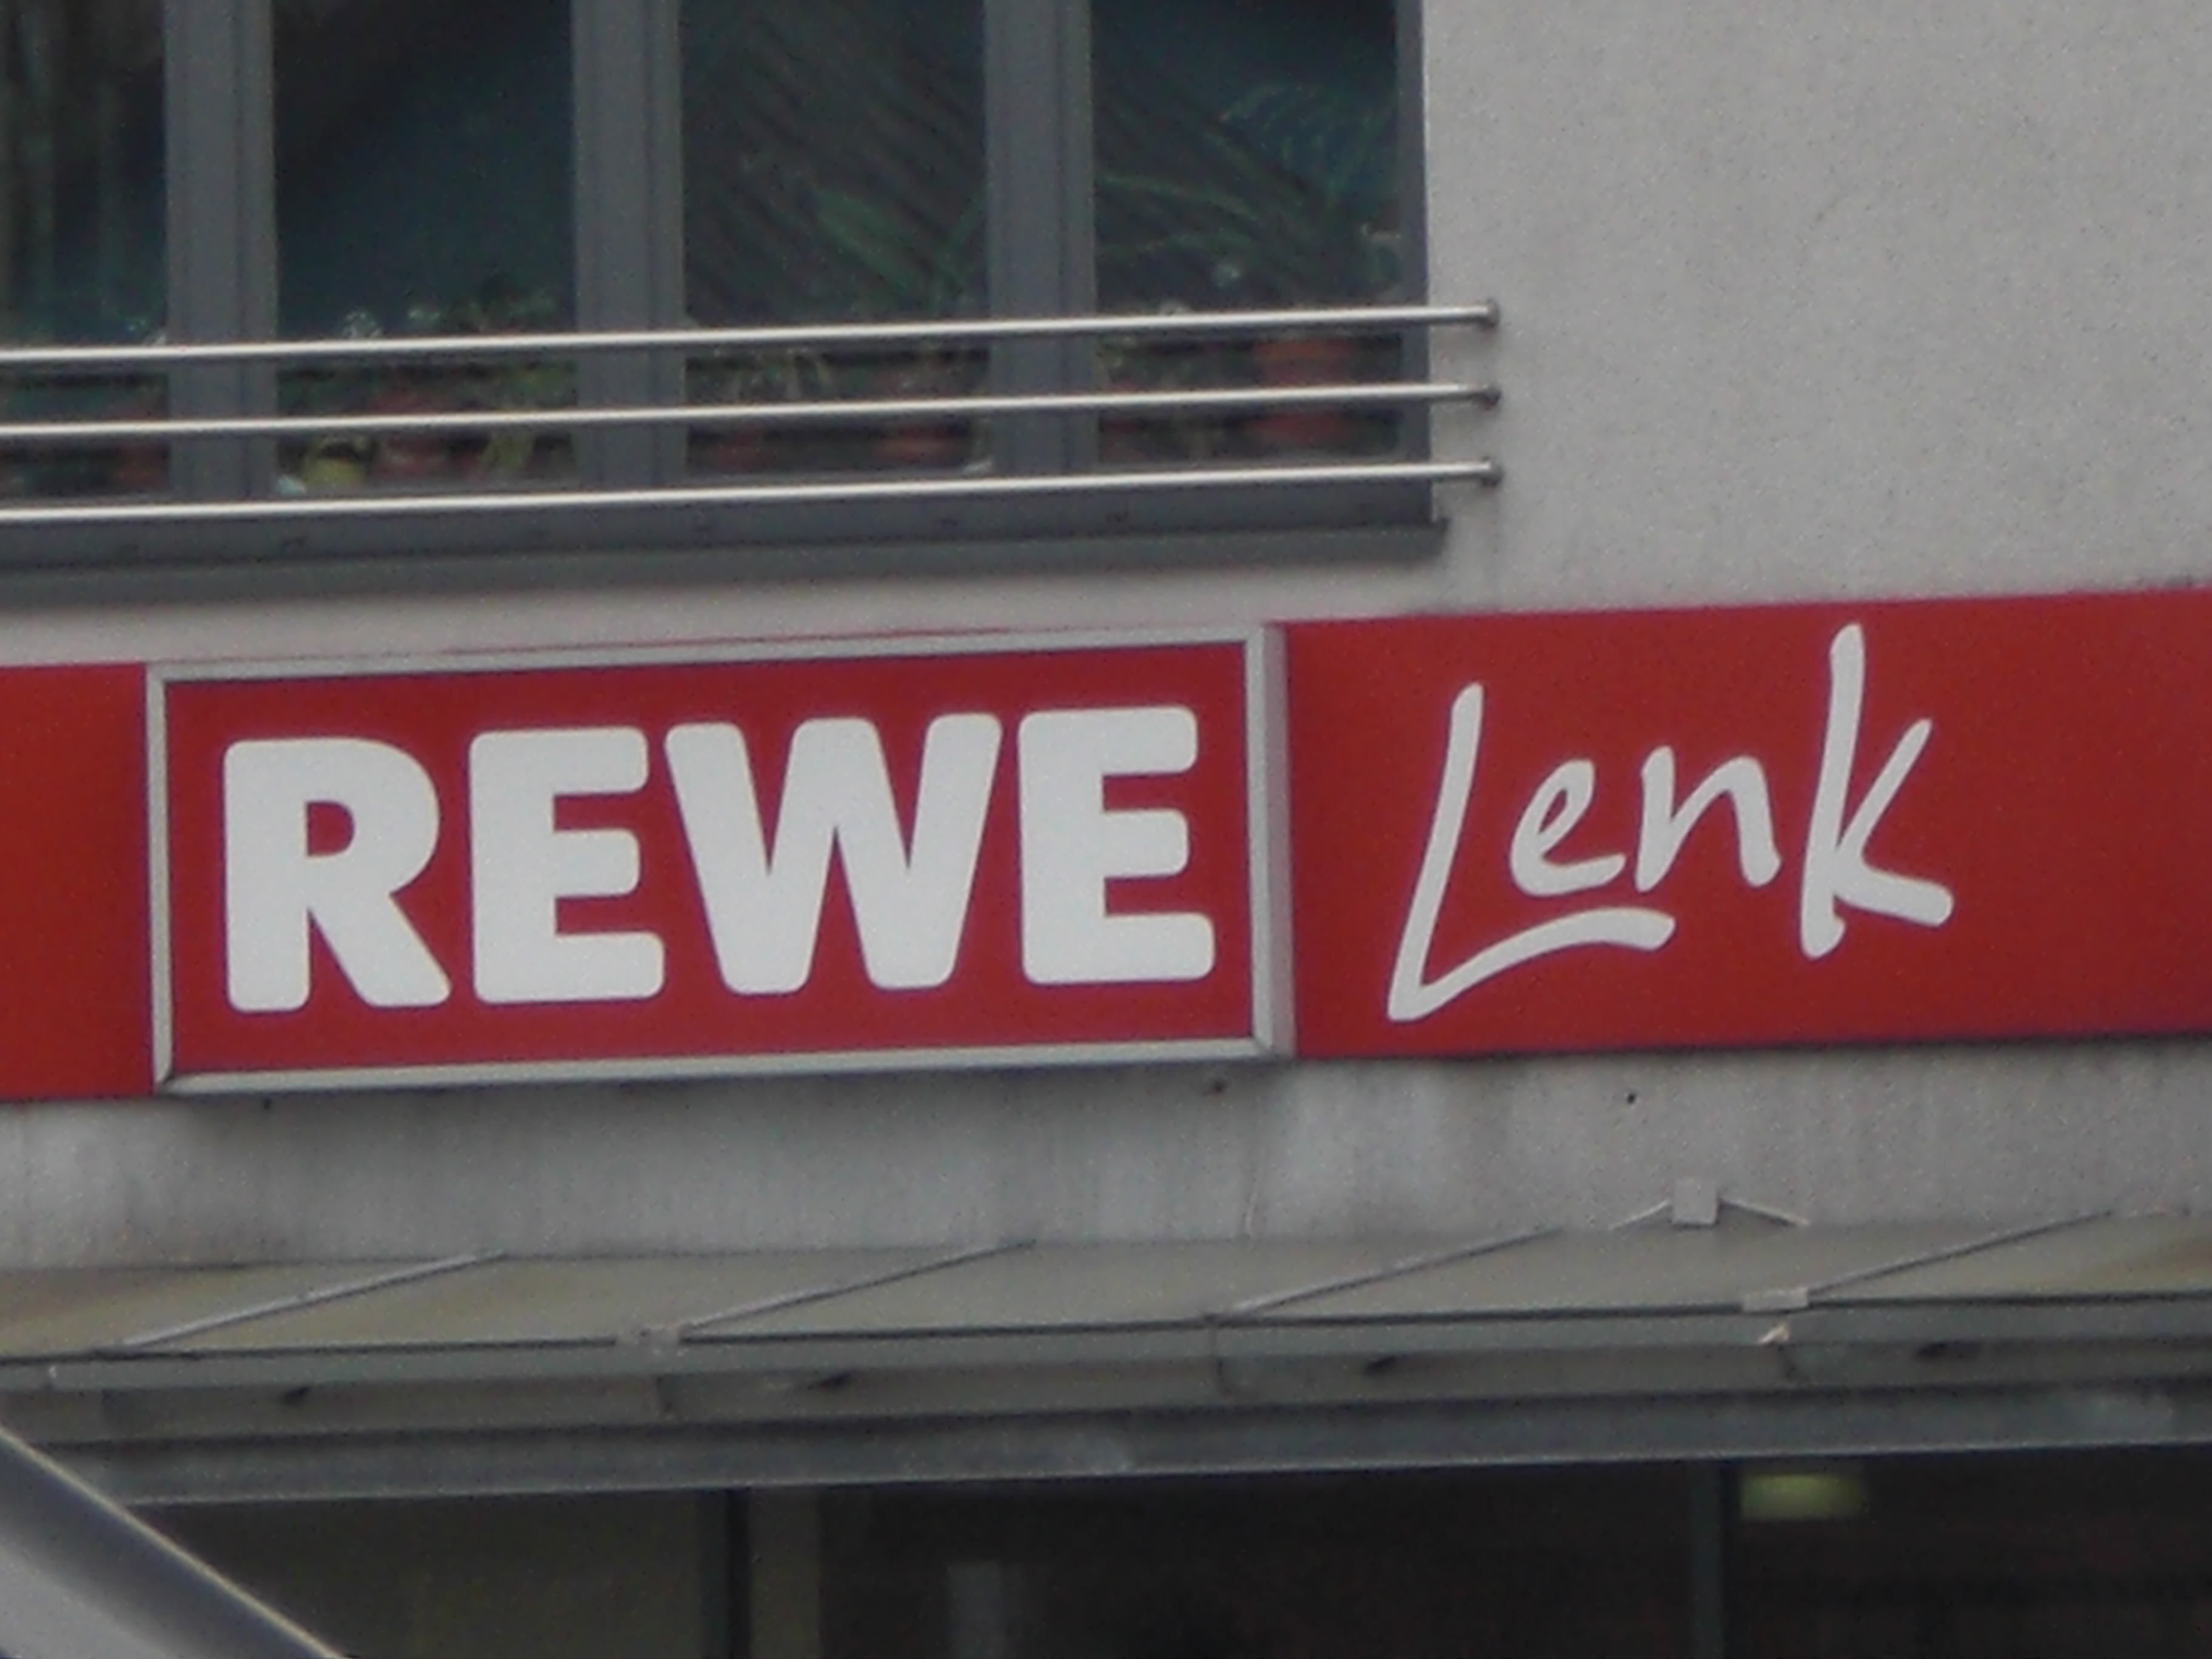 REWE Lenk in Hattingen / Blankenstein